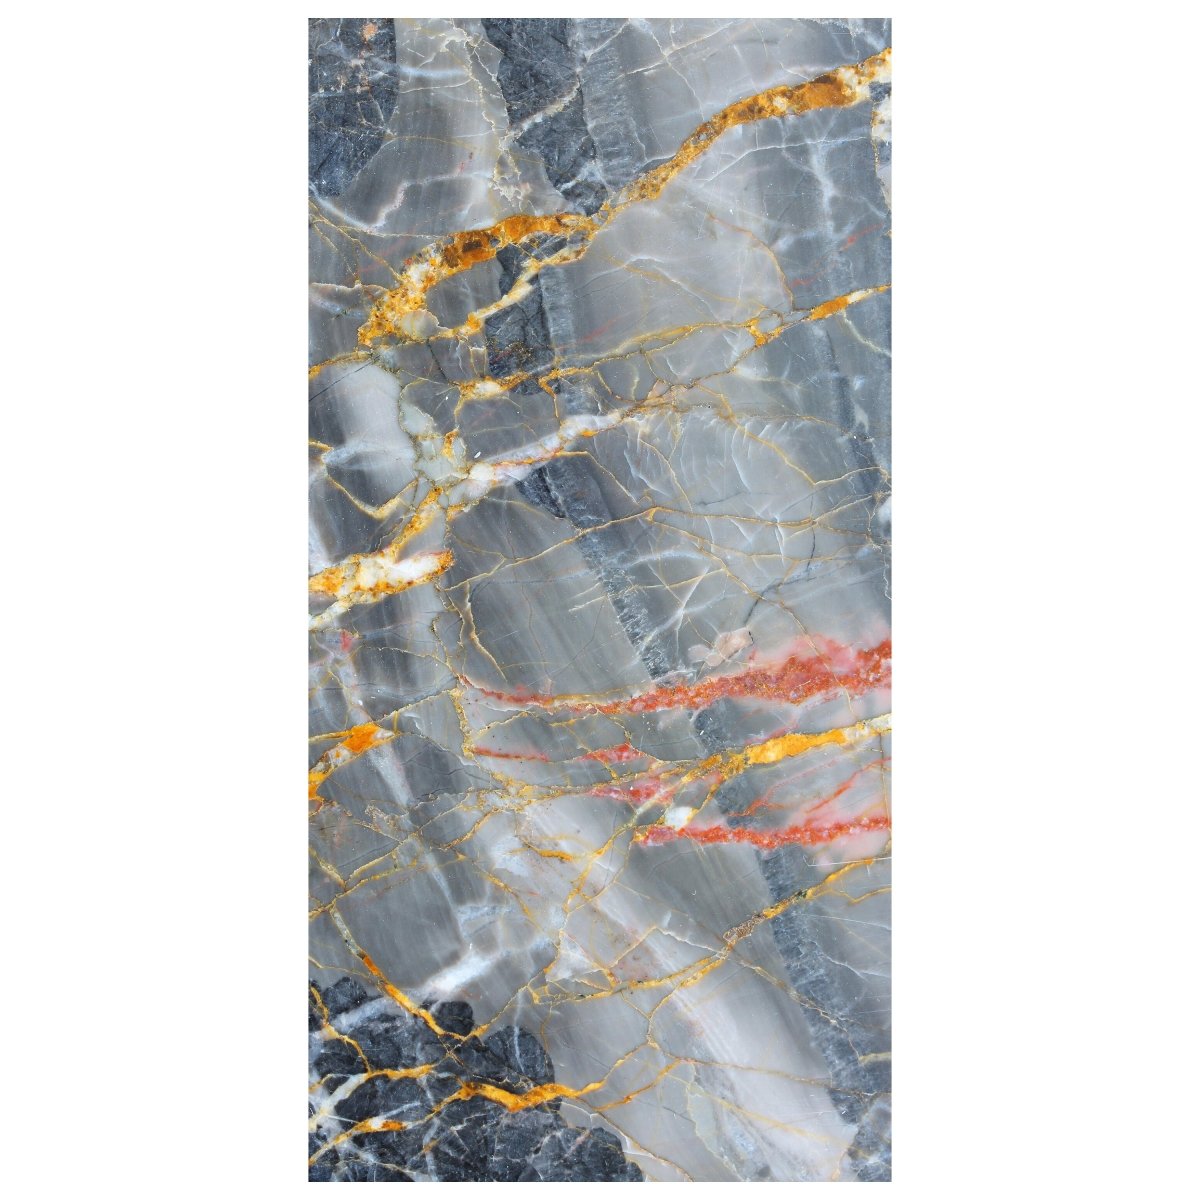 Türtapete grauer Marmor, Gold, Rot, Risse, Stein M1228 - Bild 2